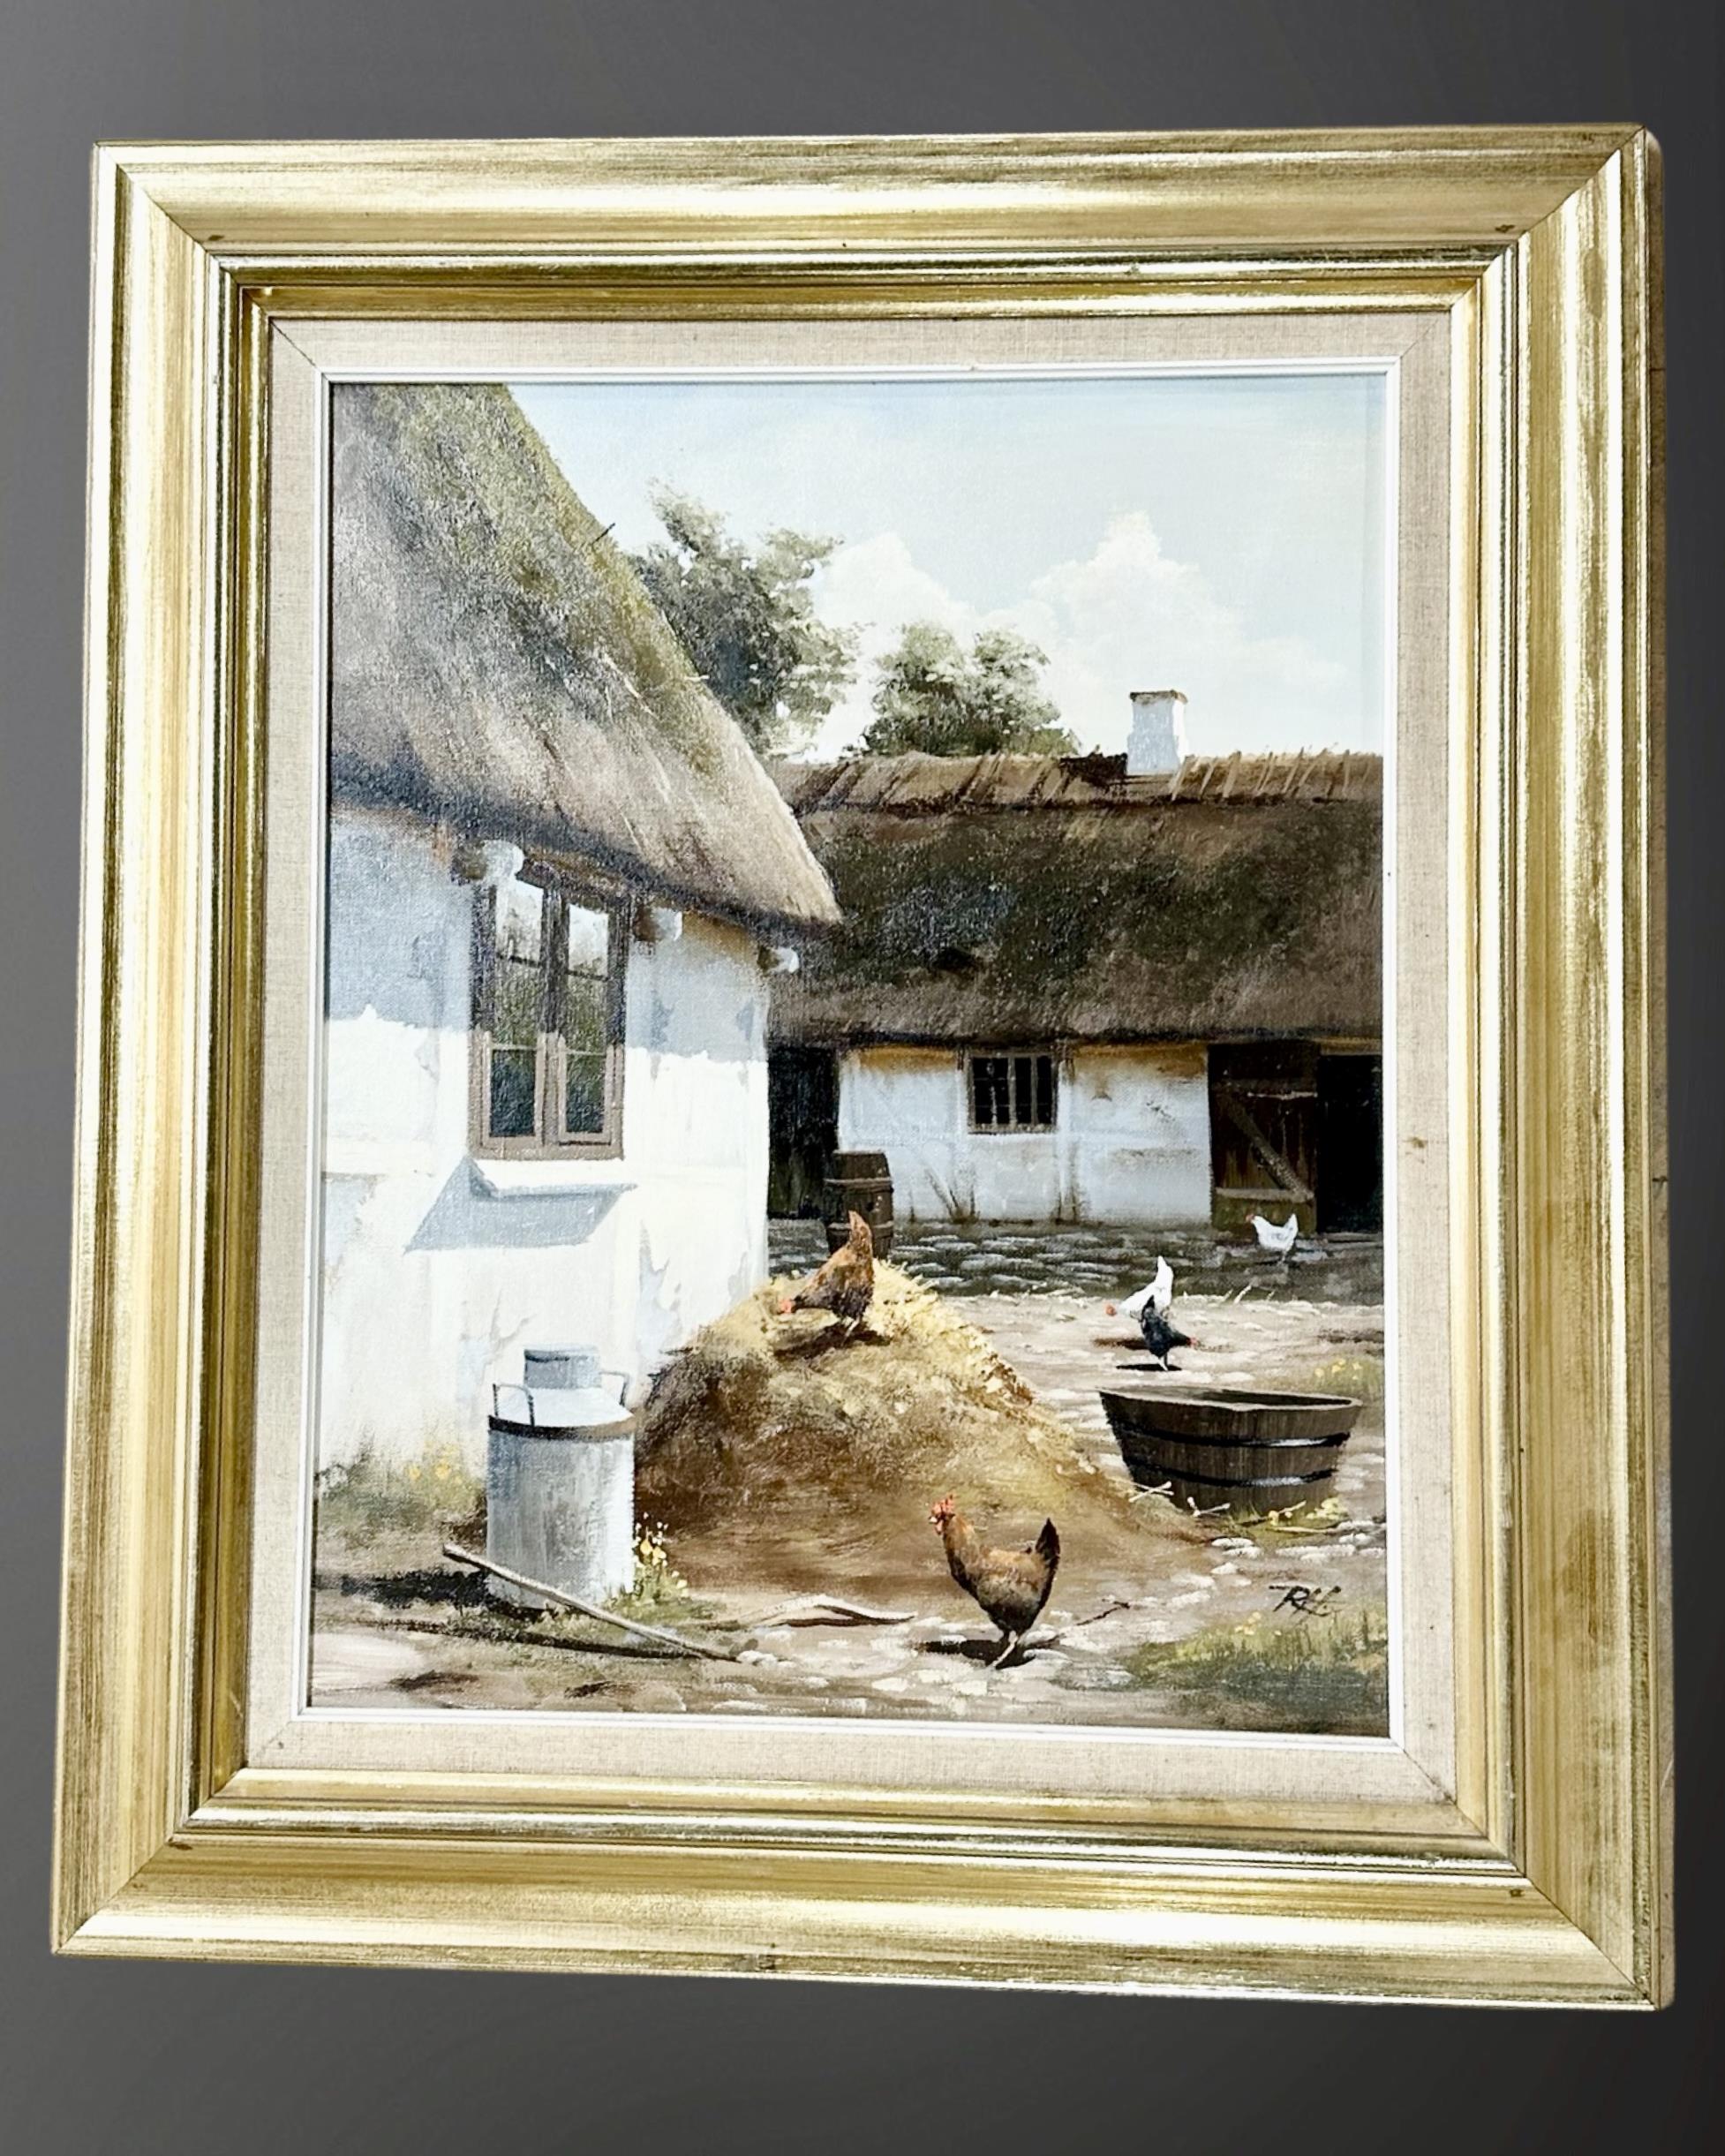 R Hansen : Chickens in a courtyard, oil